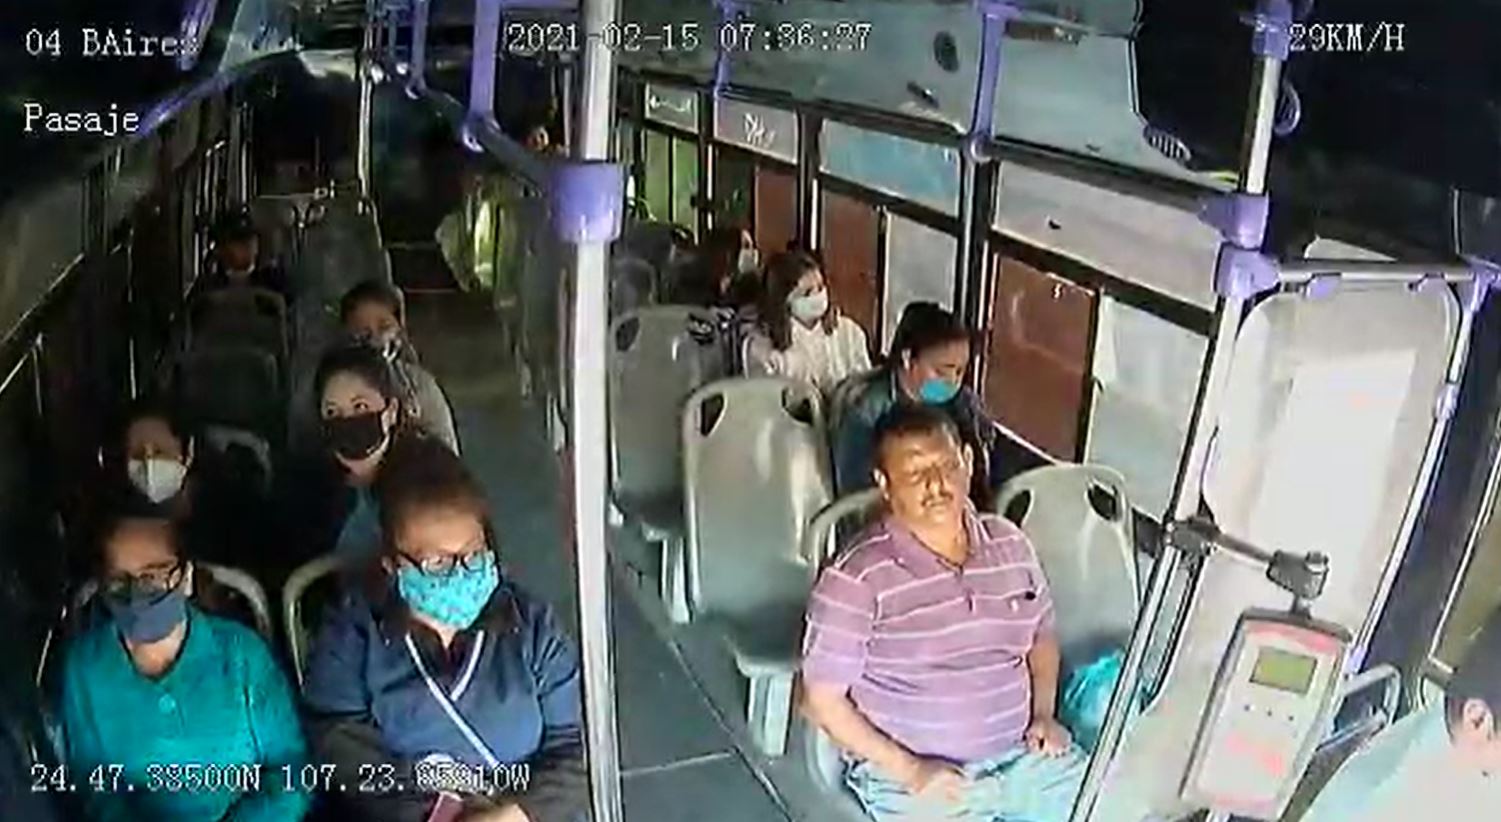 Viral: Hombre ataca a su pareja cuando viajaban en transporte público en Sinaloa